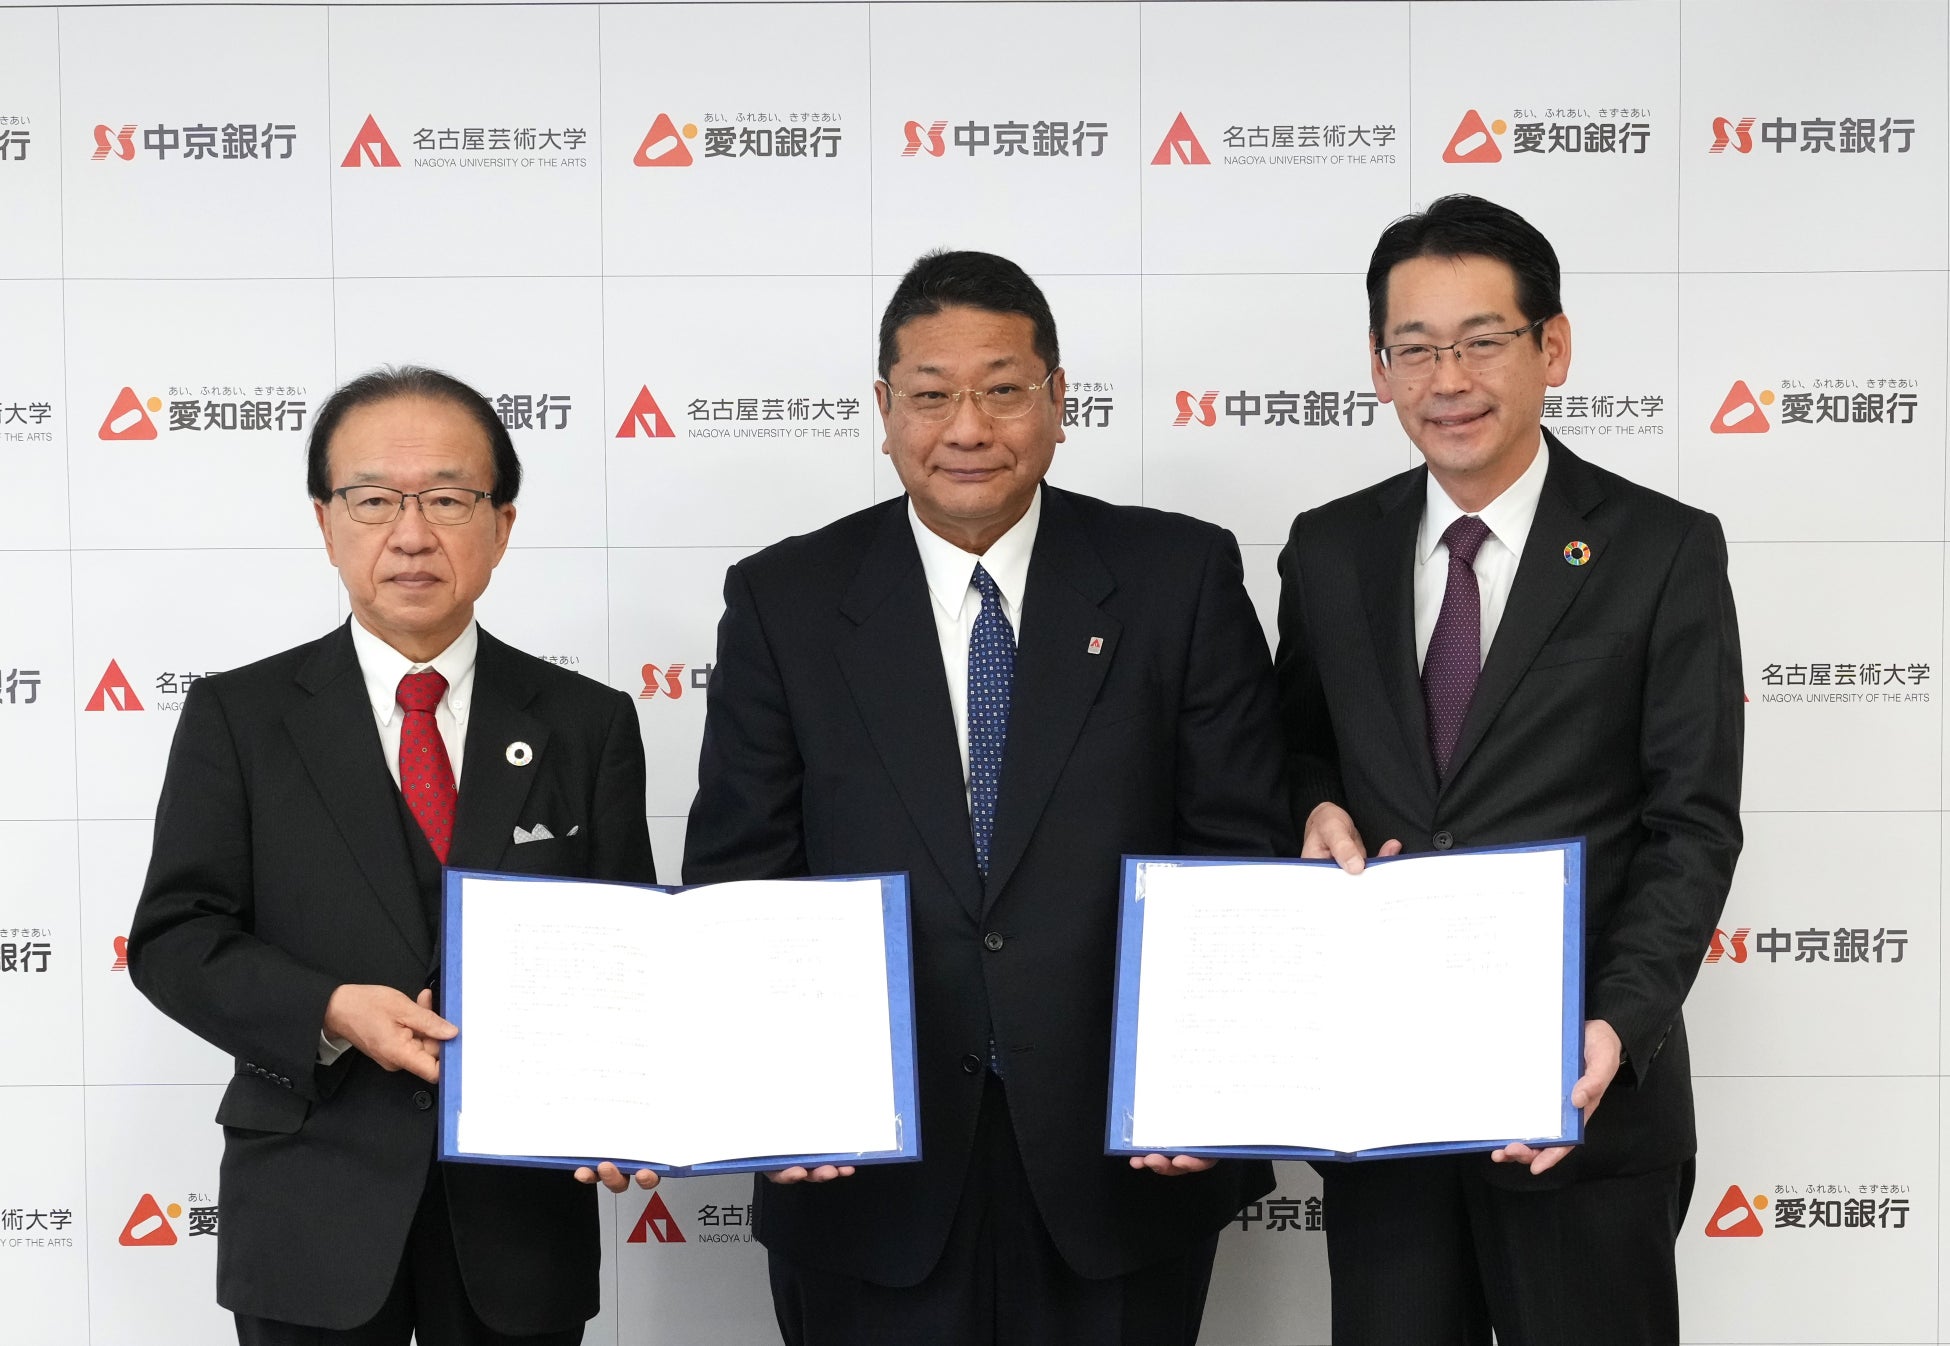 名古屋芸術大学と愛知銀行並びに中京銀行との「連携・協力に関する協定」の締結について